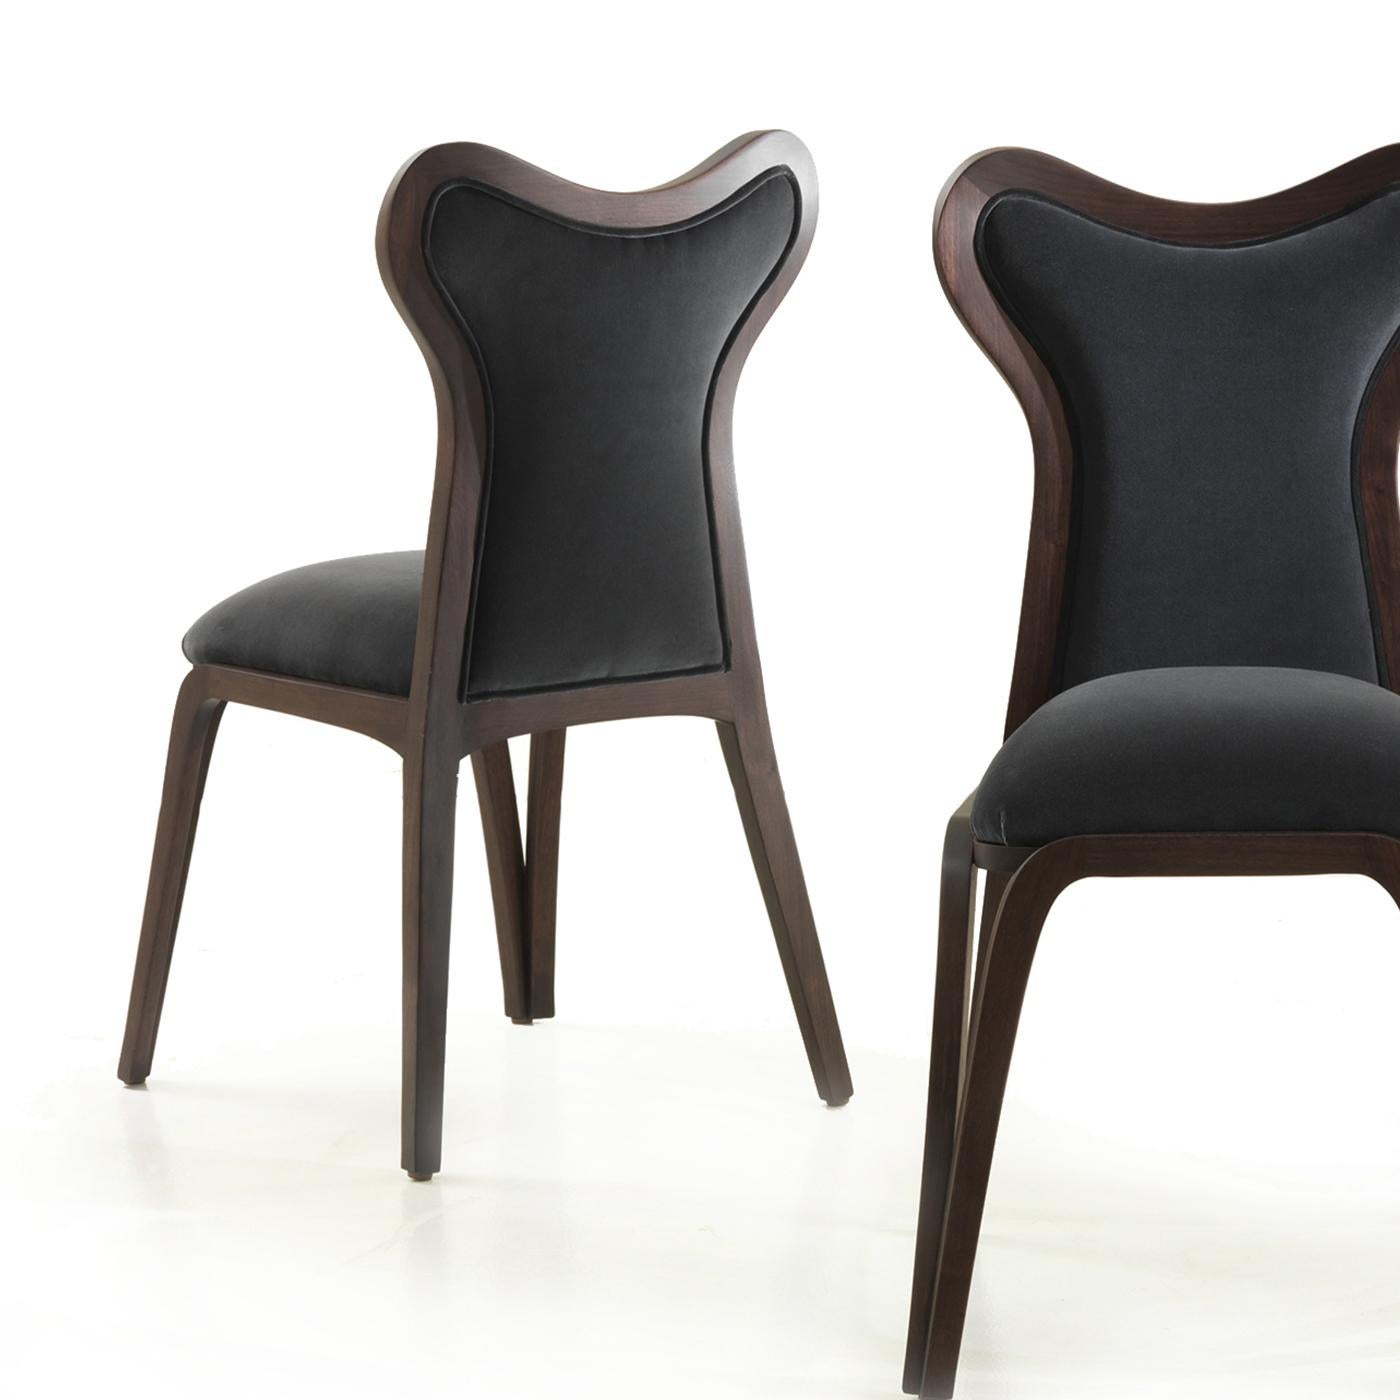 Eine atemberaubende Reihe von Kurven zeichnet das elegante und verspielte Design dieses Stuhls aus. Entweder mit mehreren Exemplaren um einen Esstisch herum oder hinter einem klassischen Schreibtisch platziert, ist dies eine zeitlose Ergänzung